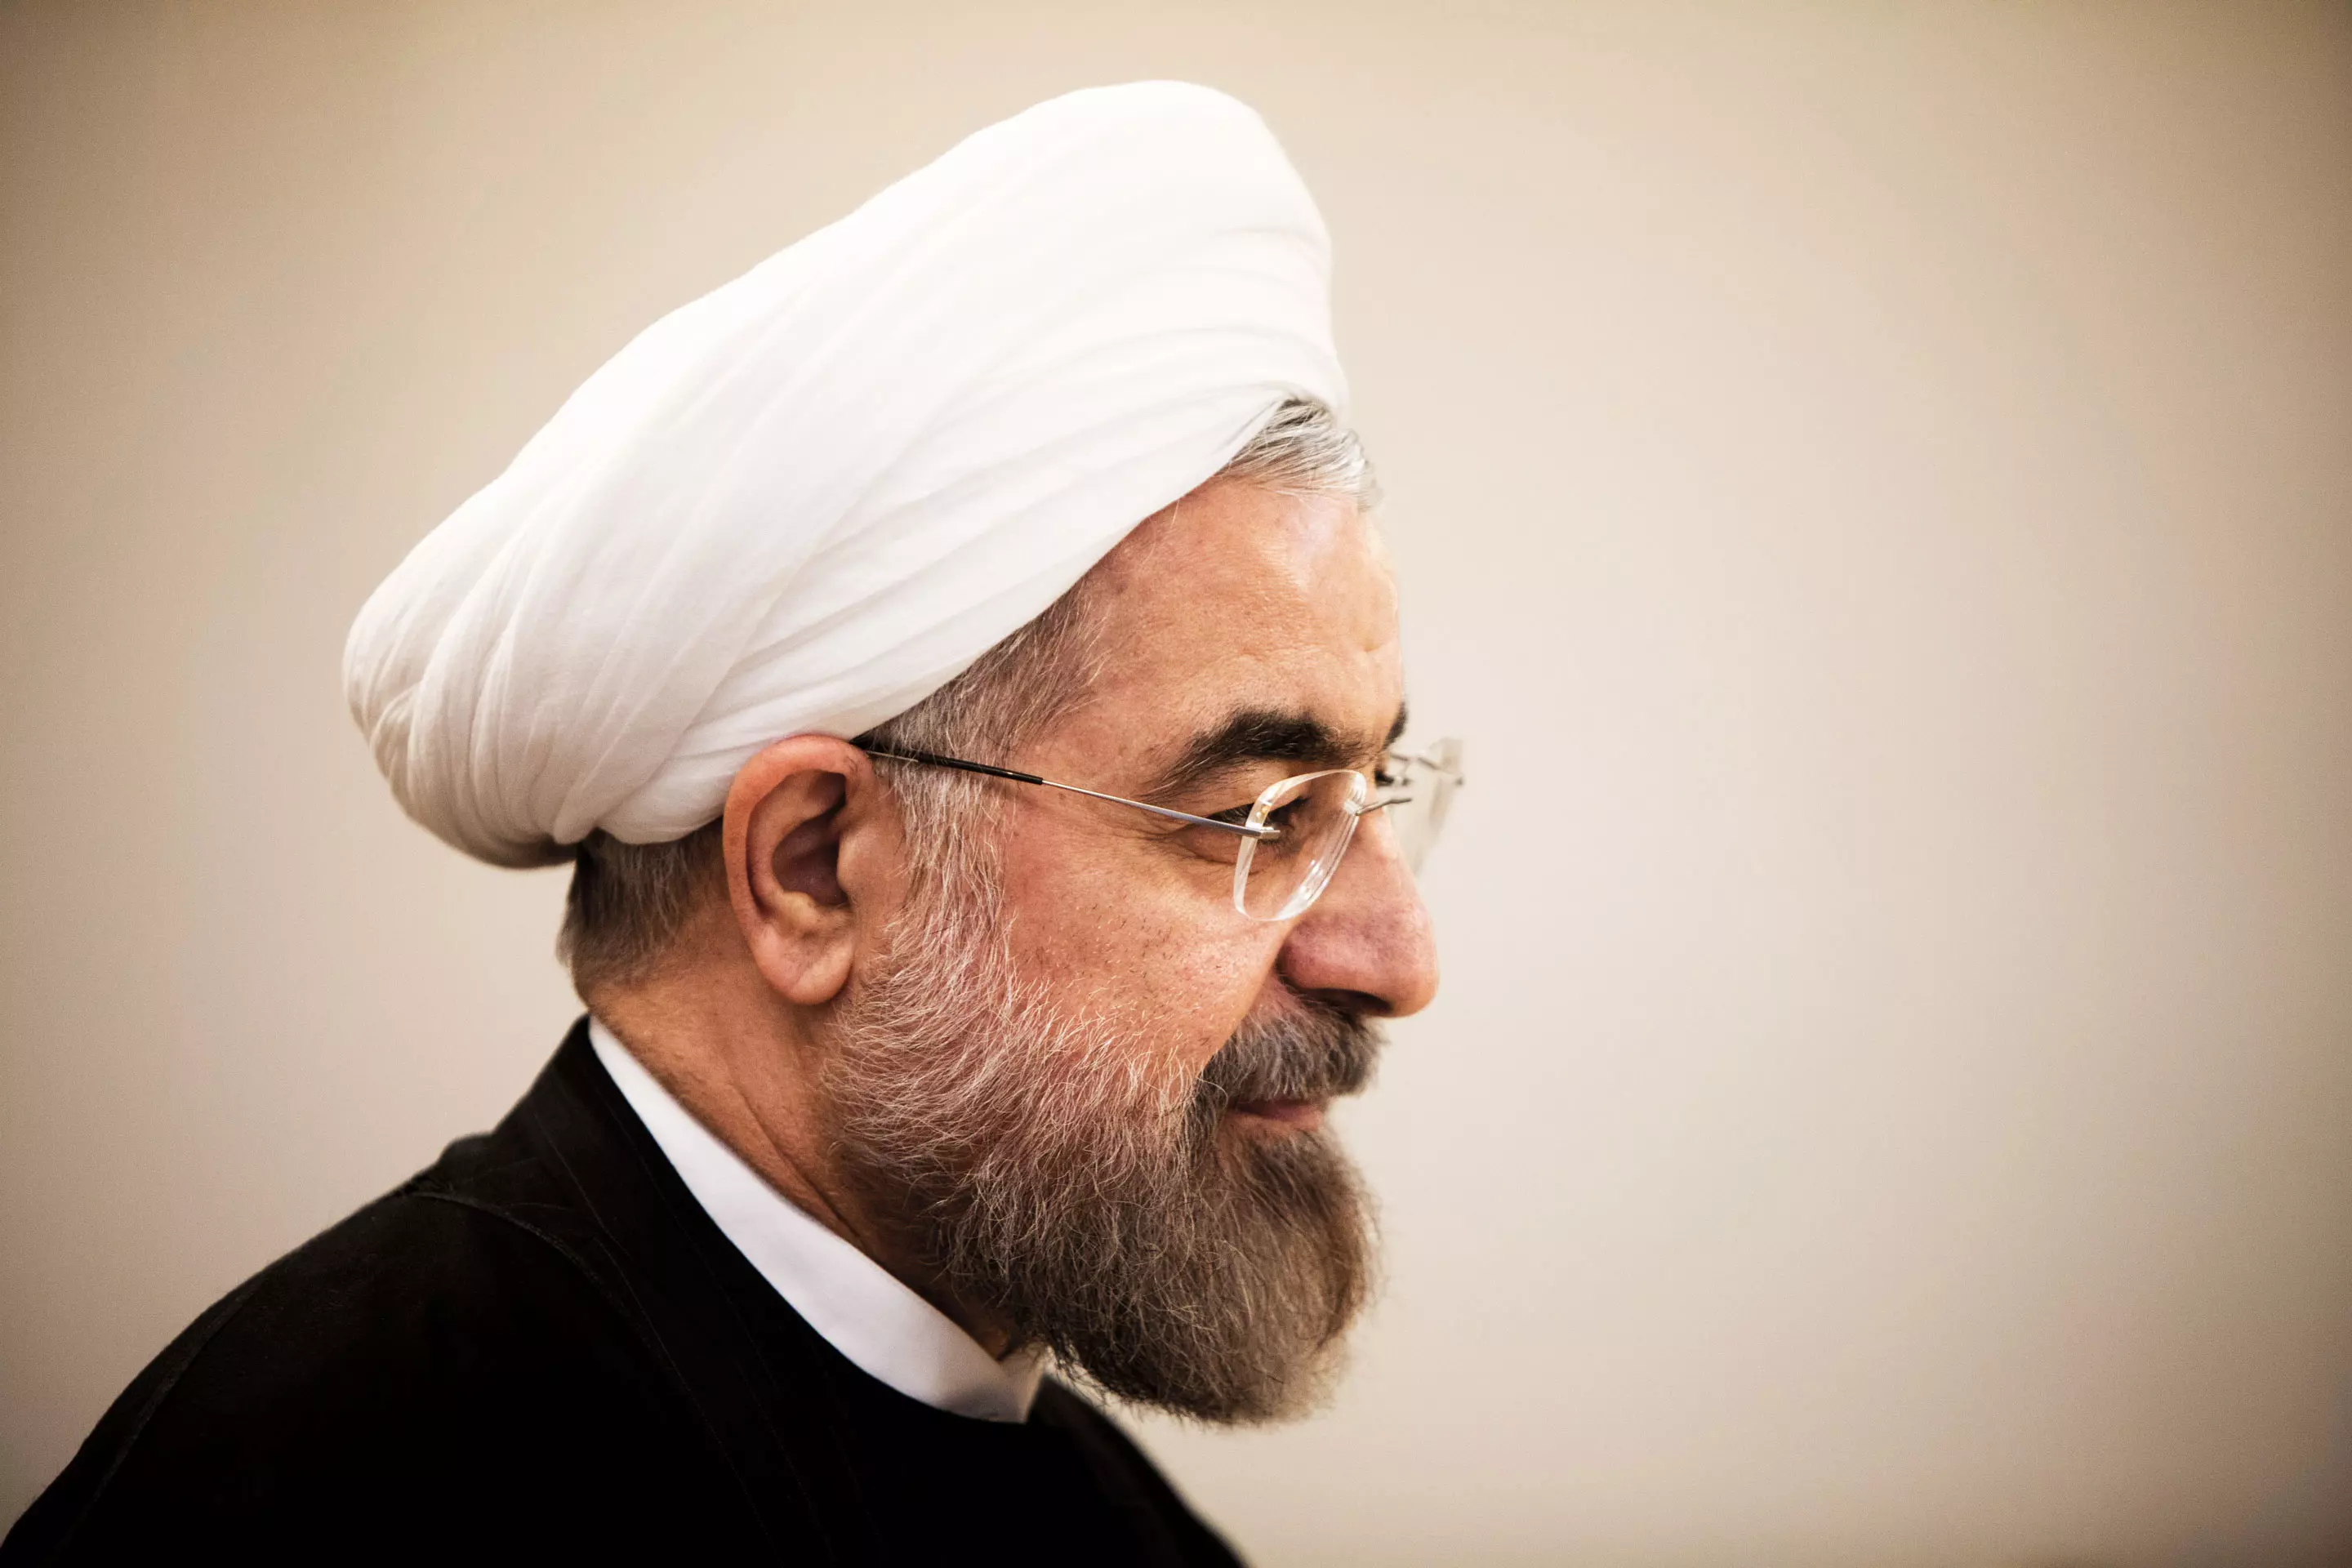 נשיא איראן, חסן רוחאני